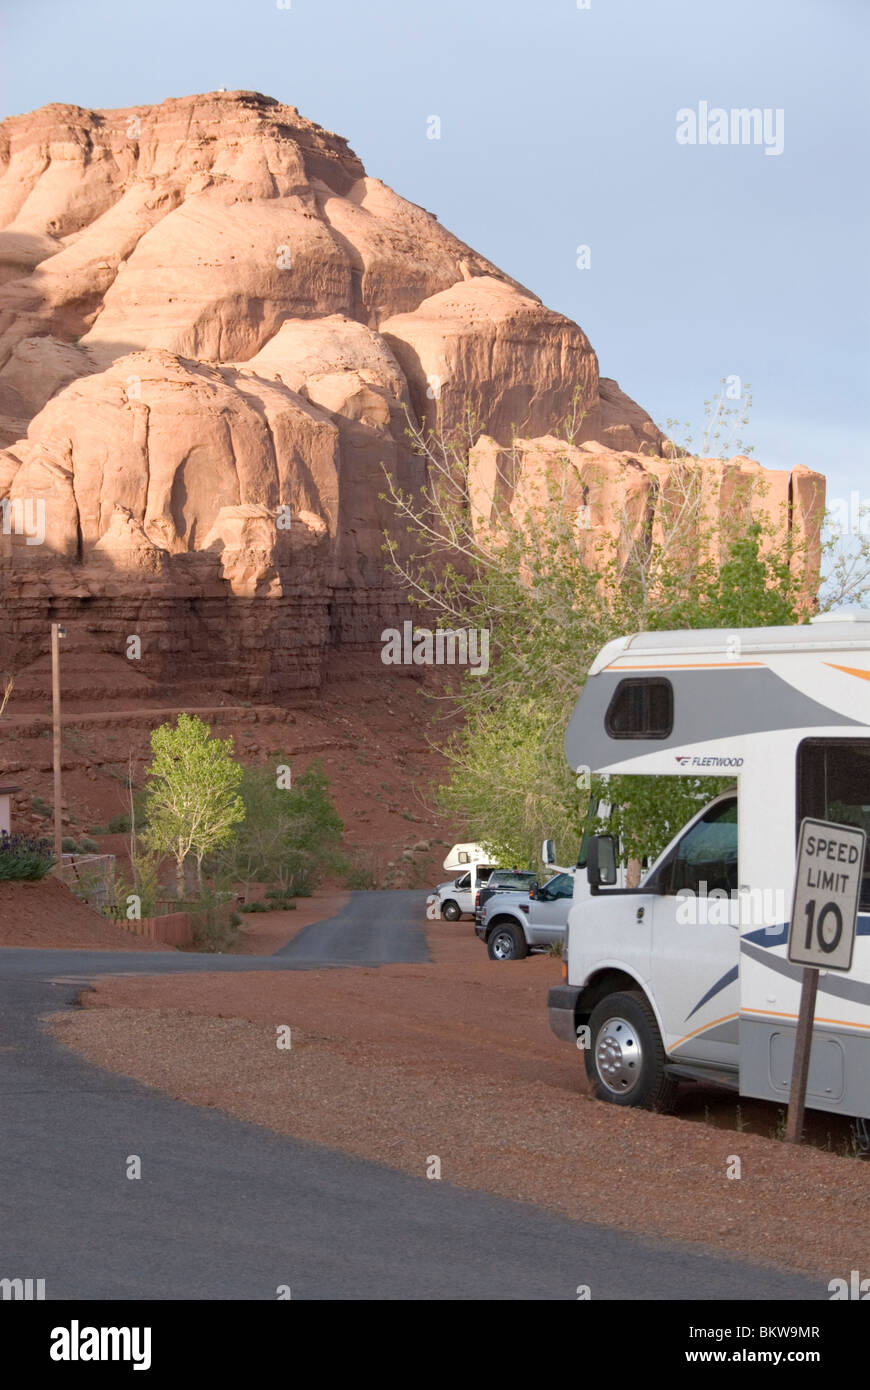 Gouldings RV park avec les véhicules de loisir derrière Gouldings Lodge de Monument Valley Navajo Tribal Park au sud-ouest de l'Utah USA Banque D'Images